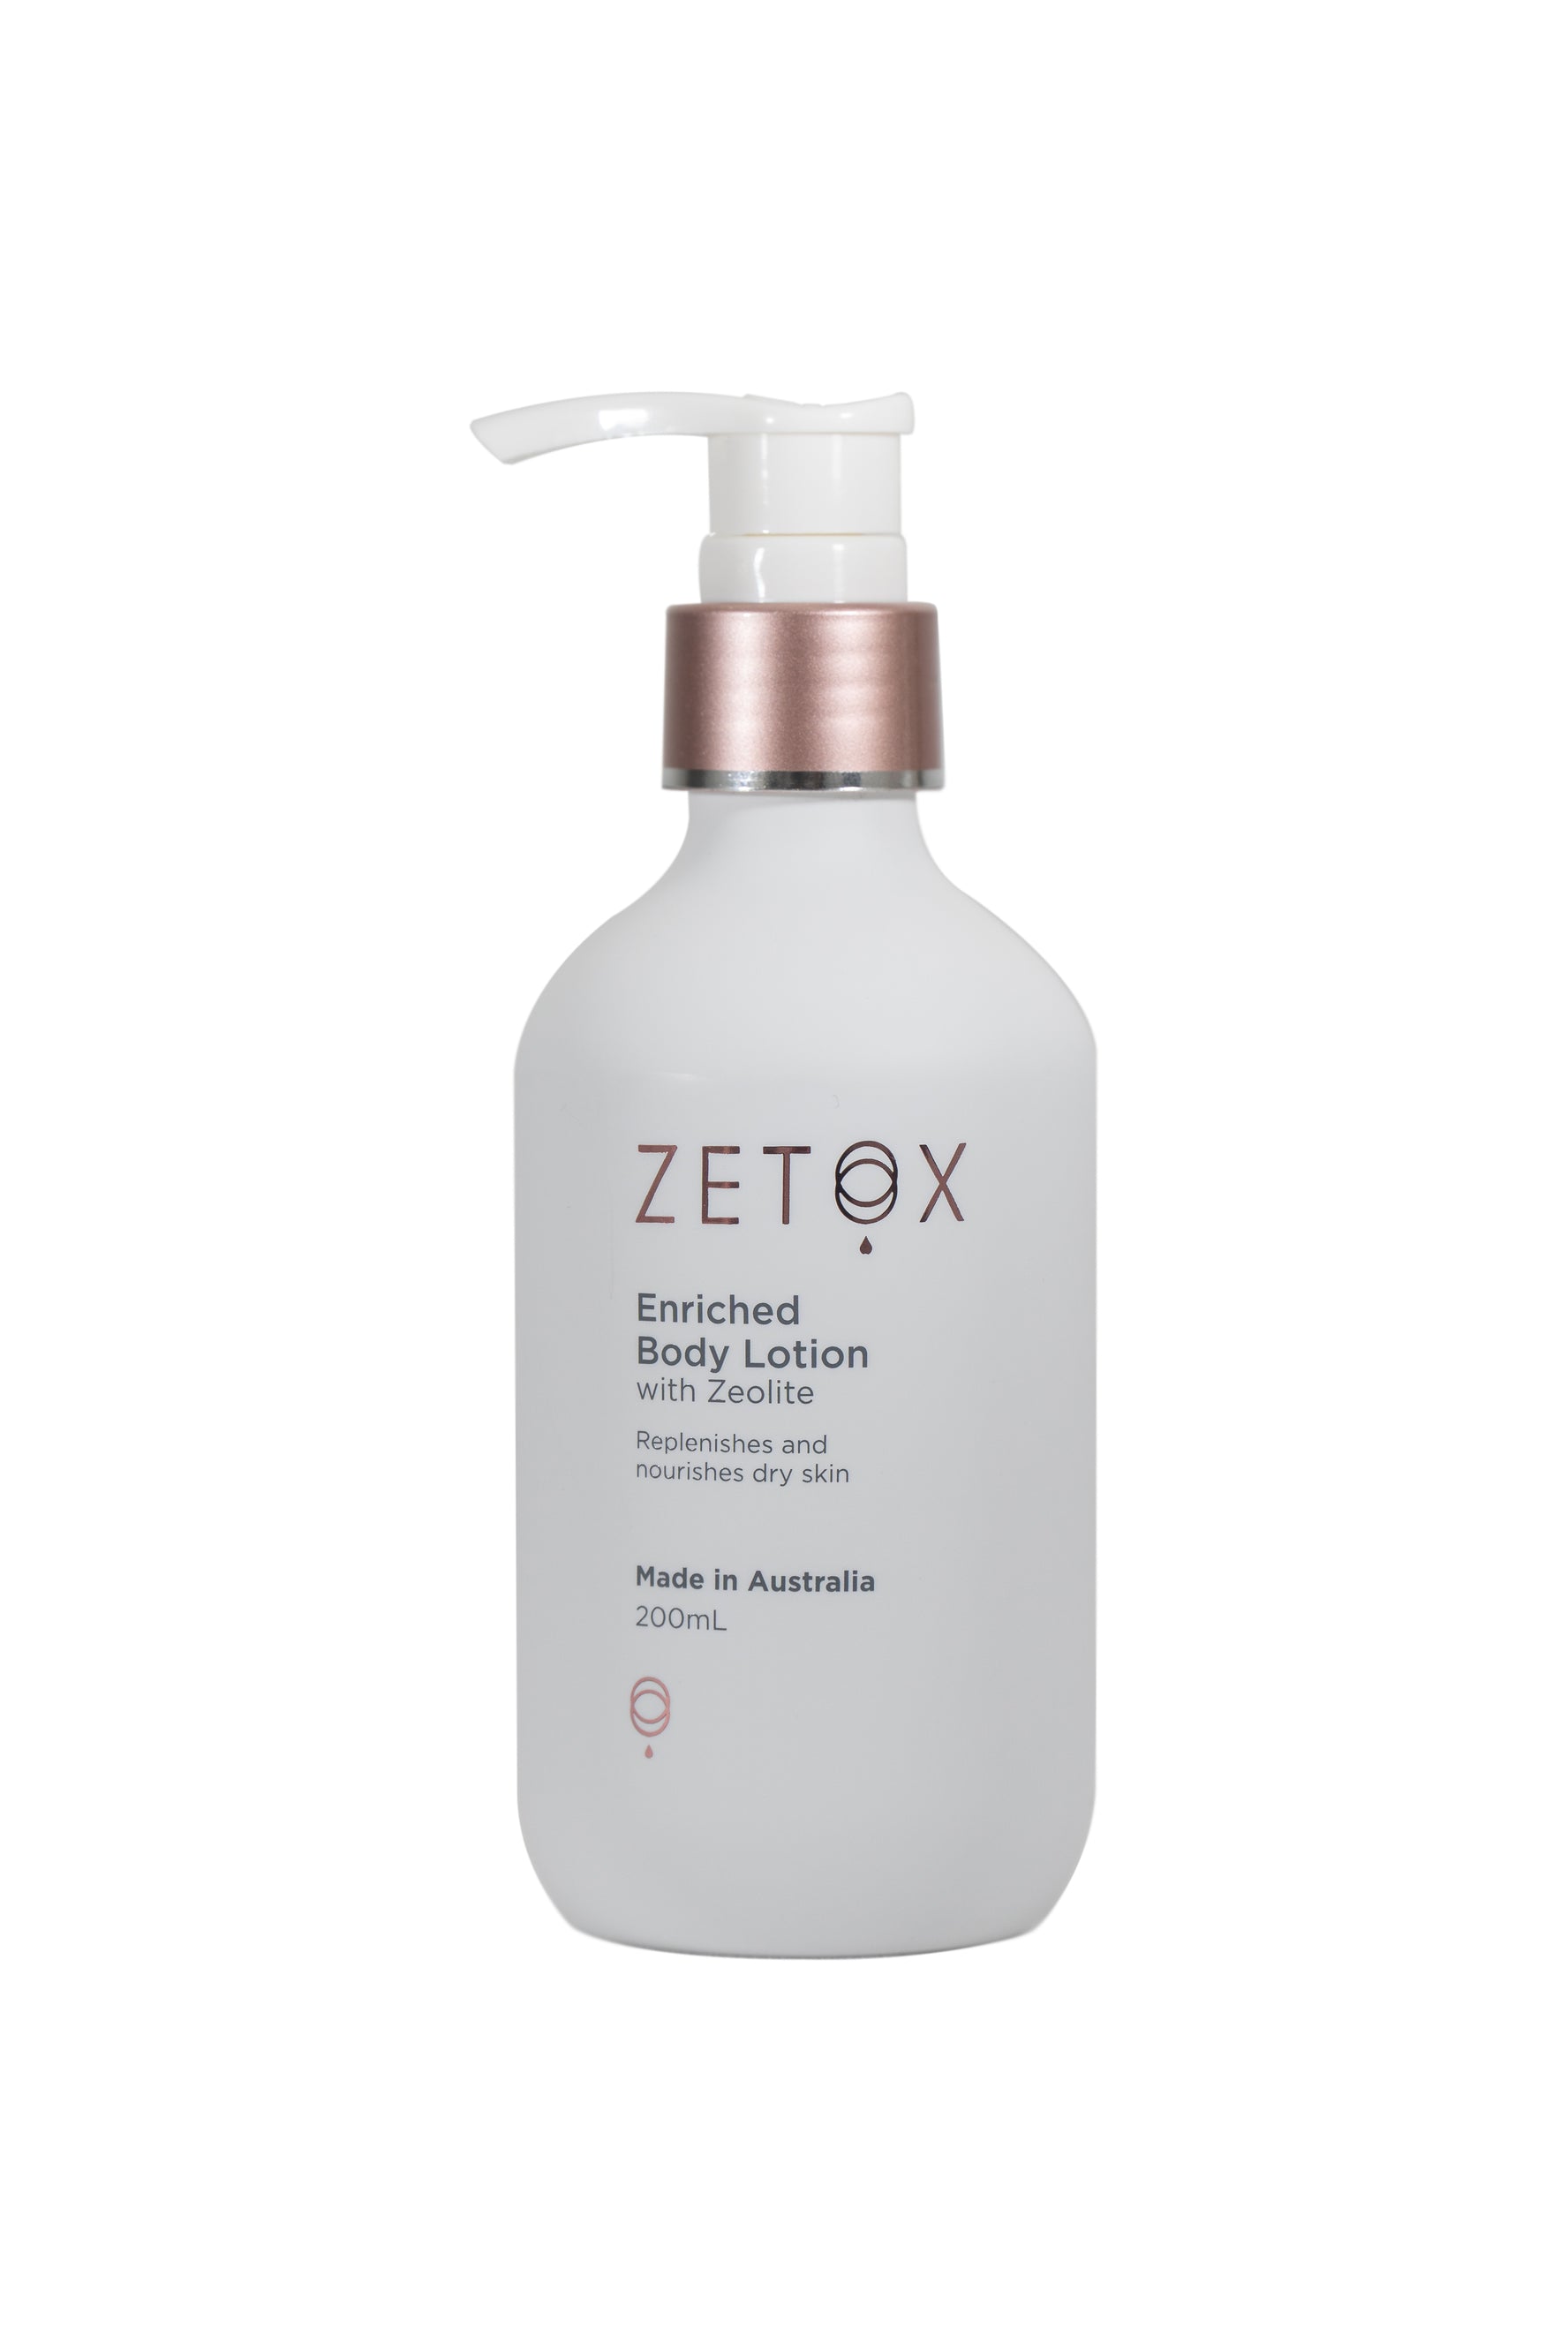 Zetox Enriched Body Lotion 200ml